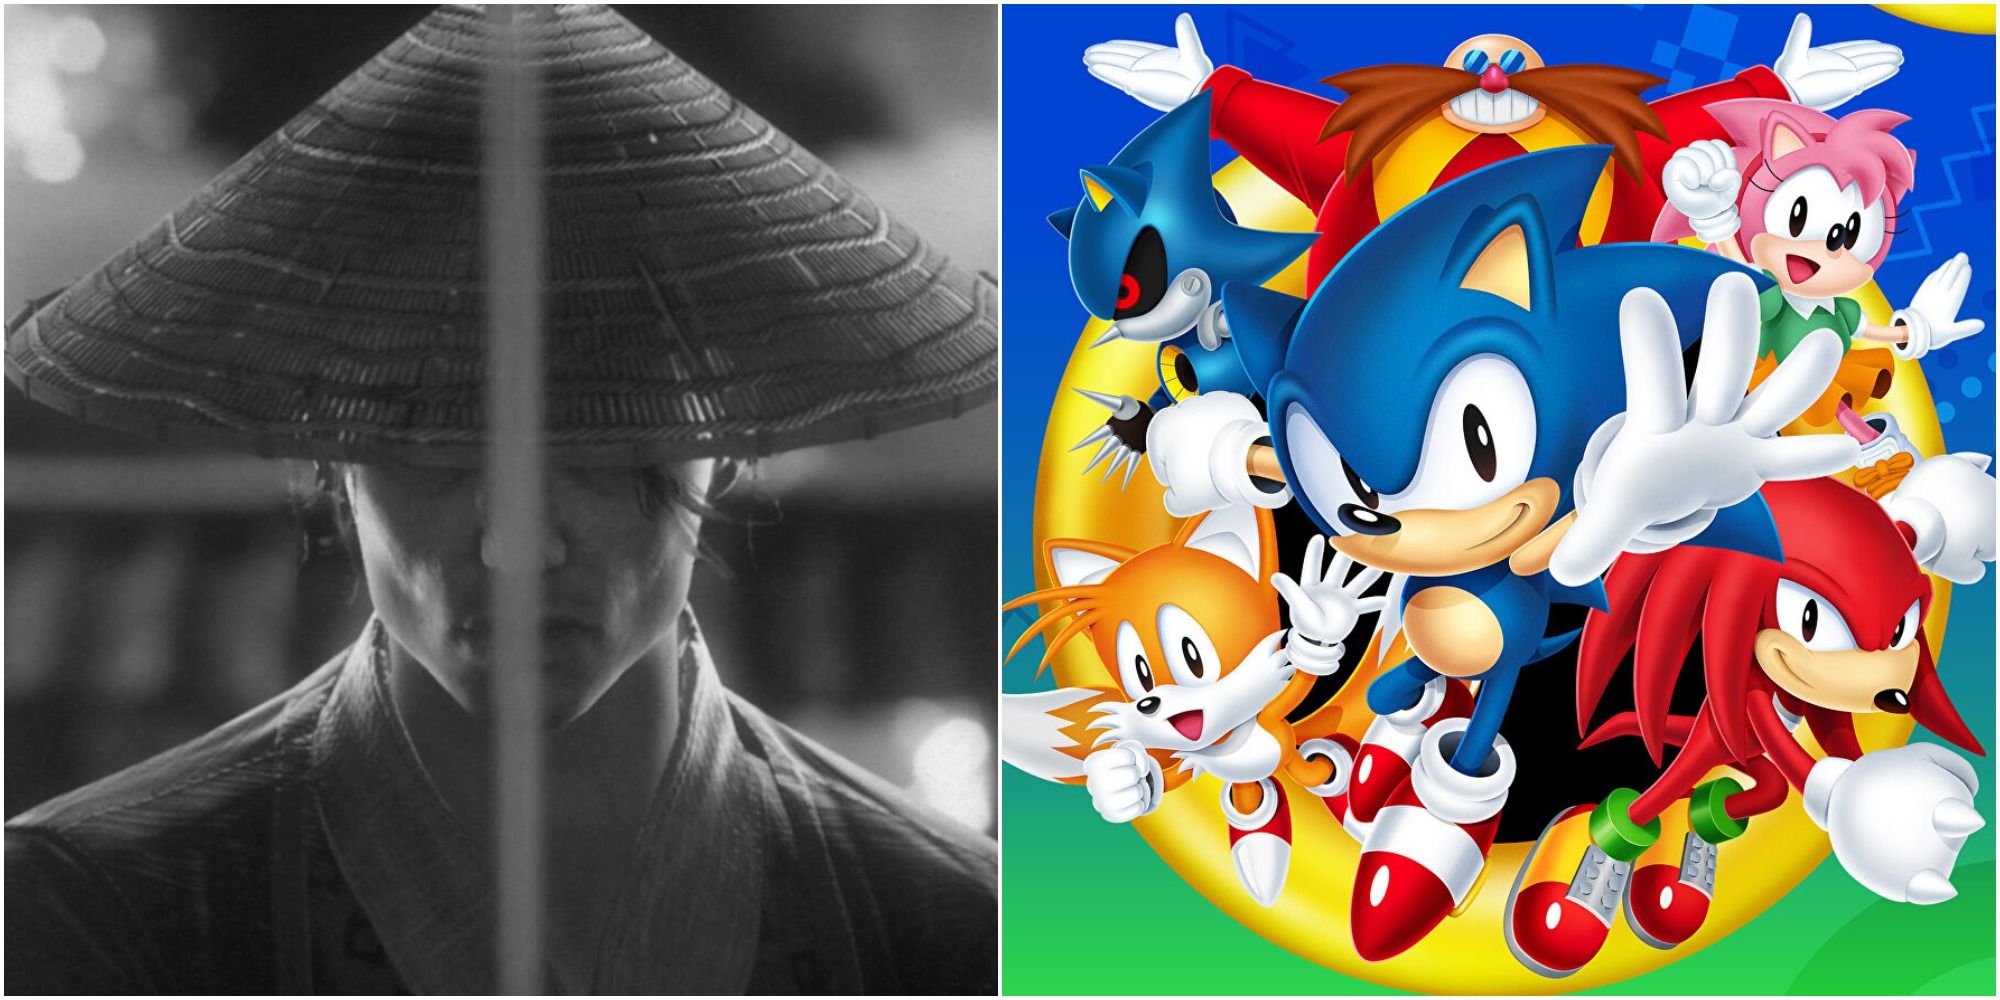 Retrospective: Sonic Adventure - Fextralife